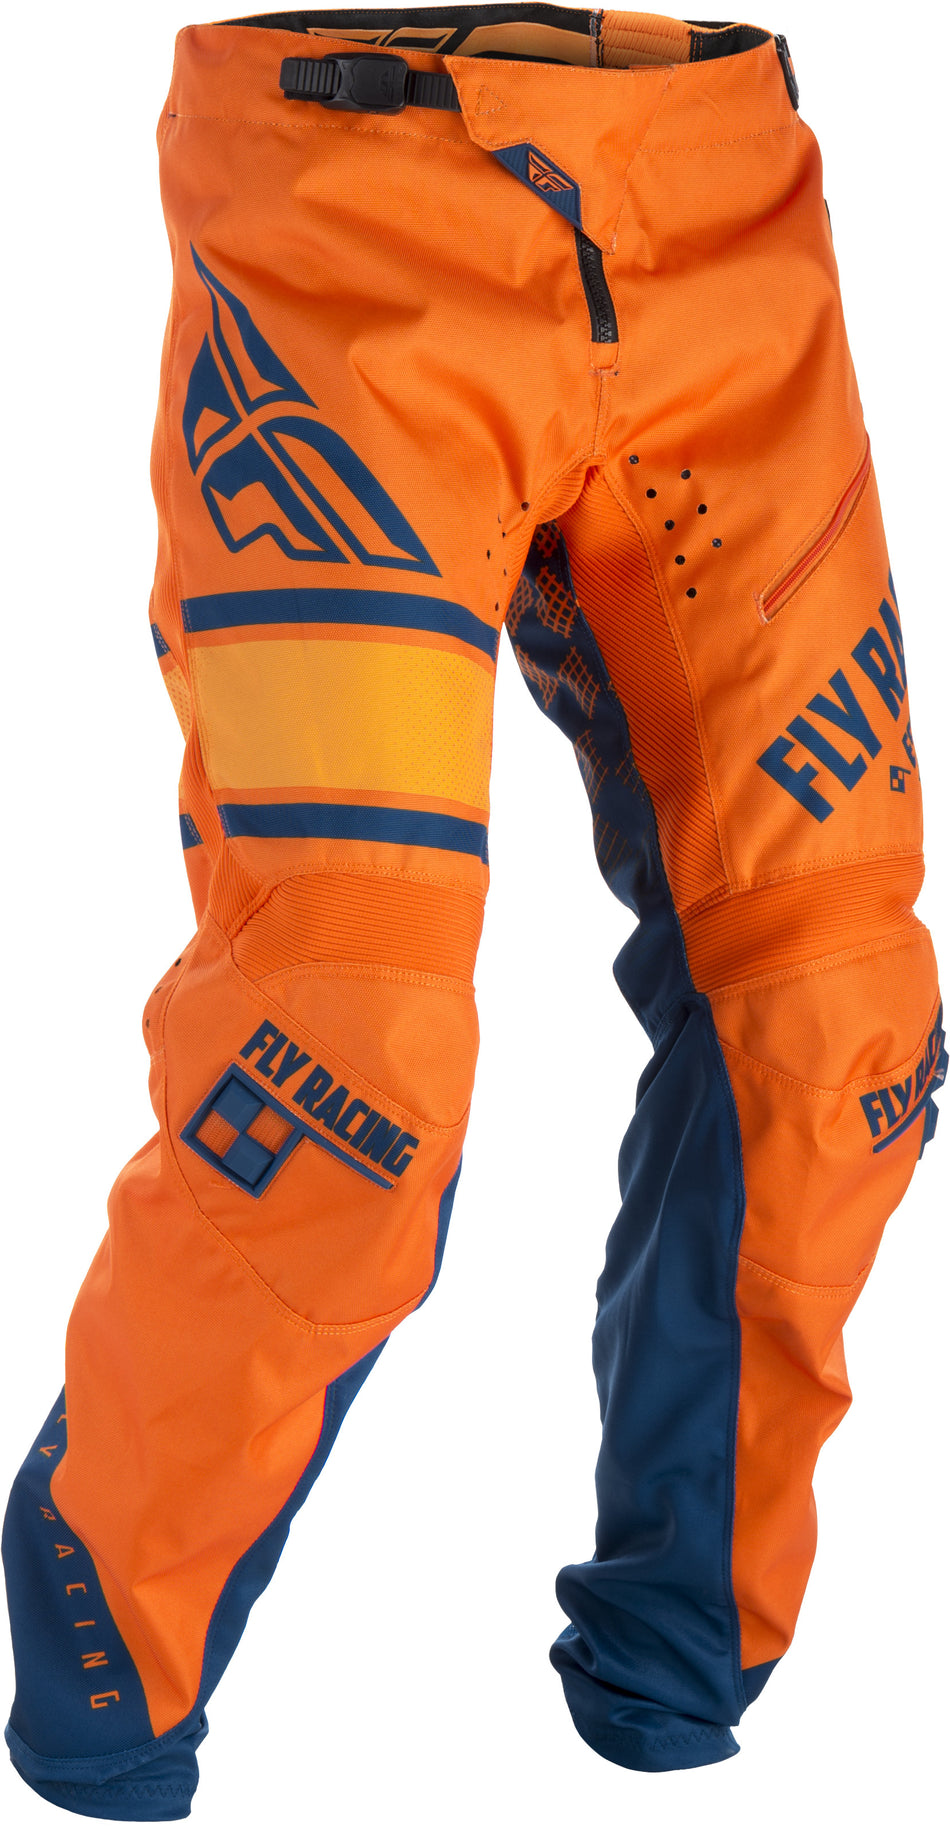 FLY RACING Kinetic Era Bicycle Pants Orange/Navy Sz 32 371-02832